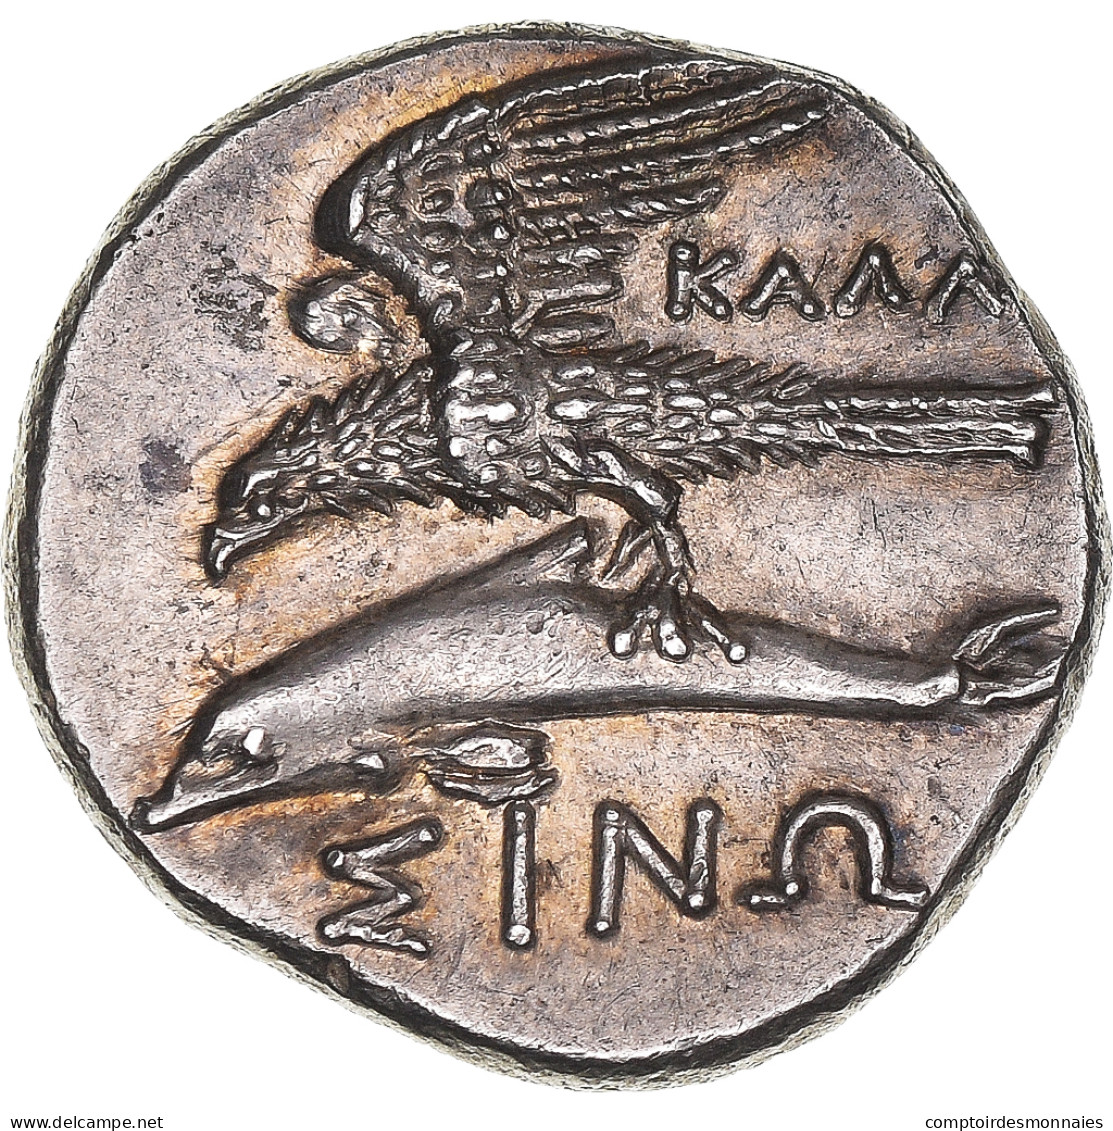 Paphlagonie, Drachme, Ca. 350/30-300 BC, Sinope, Argent, NGC, SUP, HGC:7-1488 - Grecques